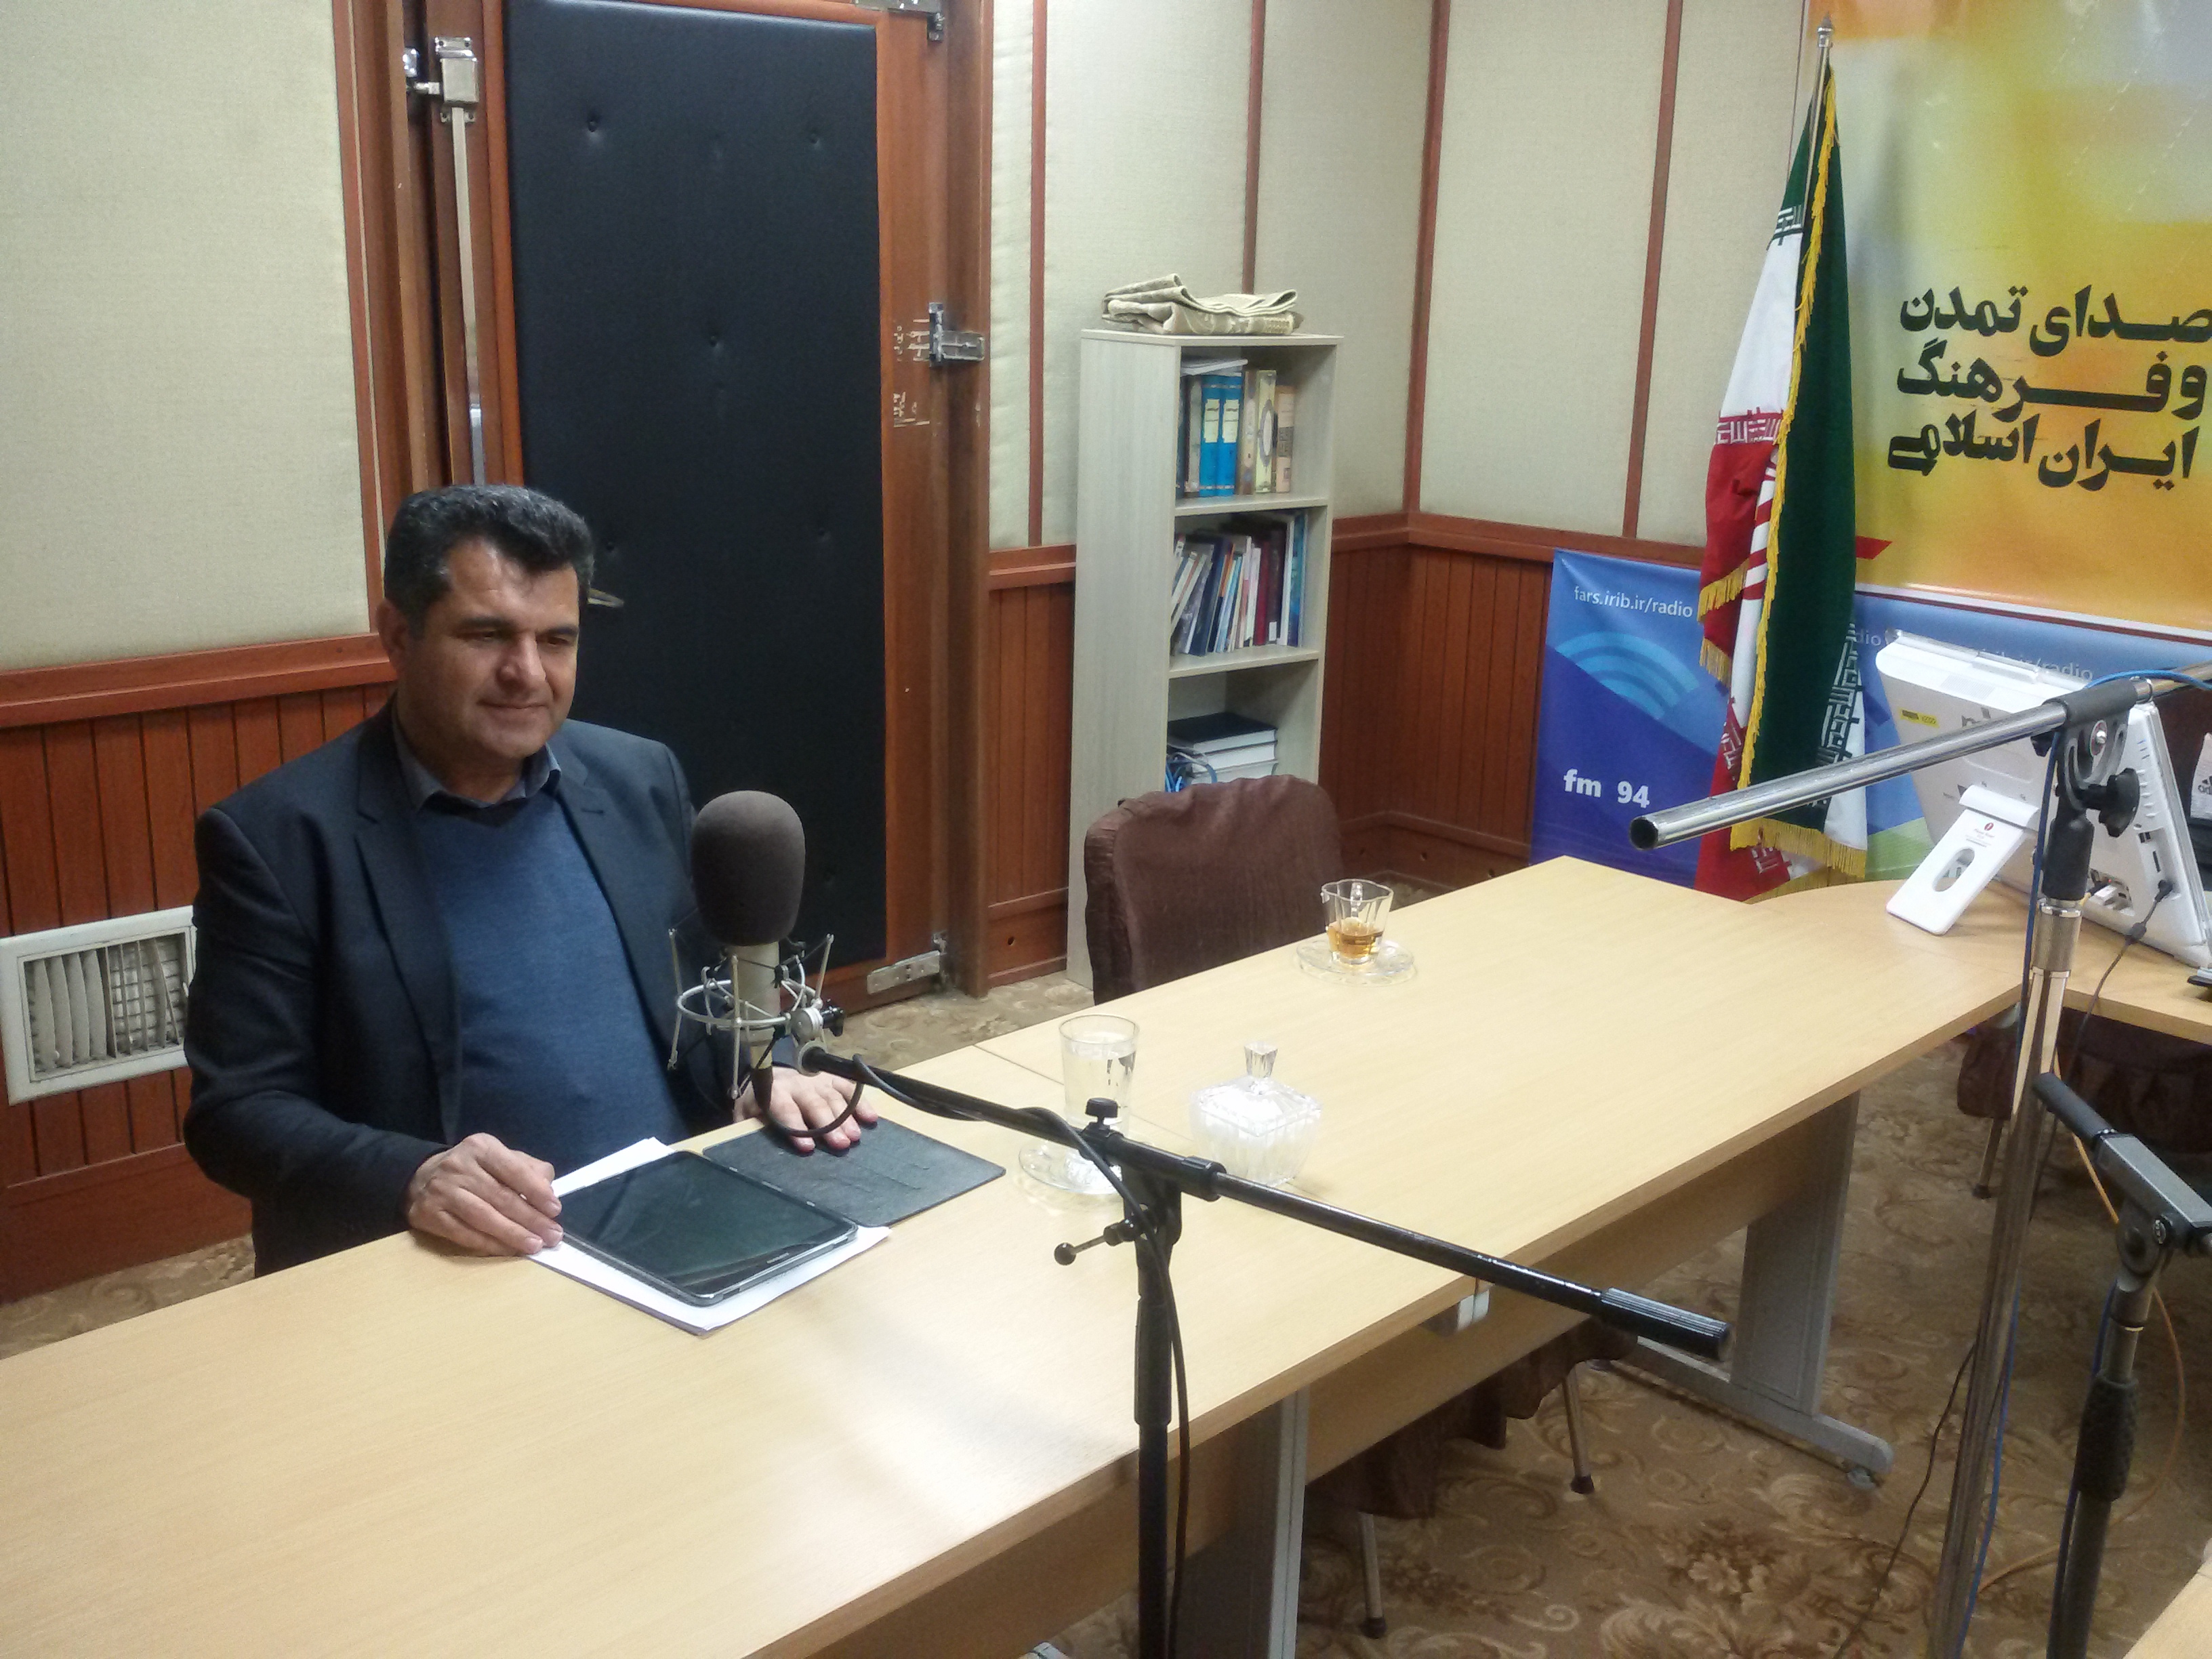 بیش از 100 پروژه عمرانی در شیراز توسط شهرداری مناطق در حال اجرا است